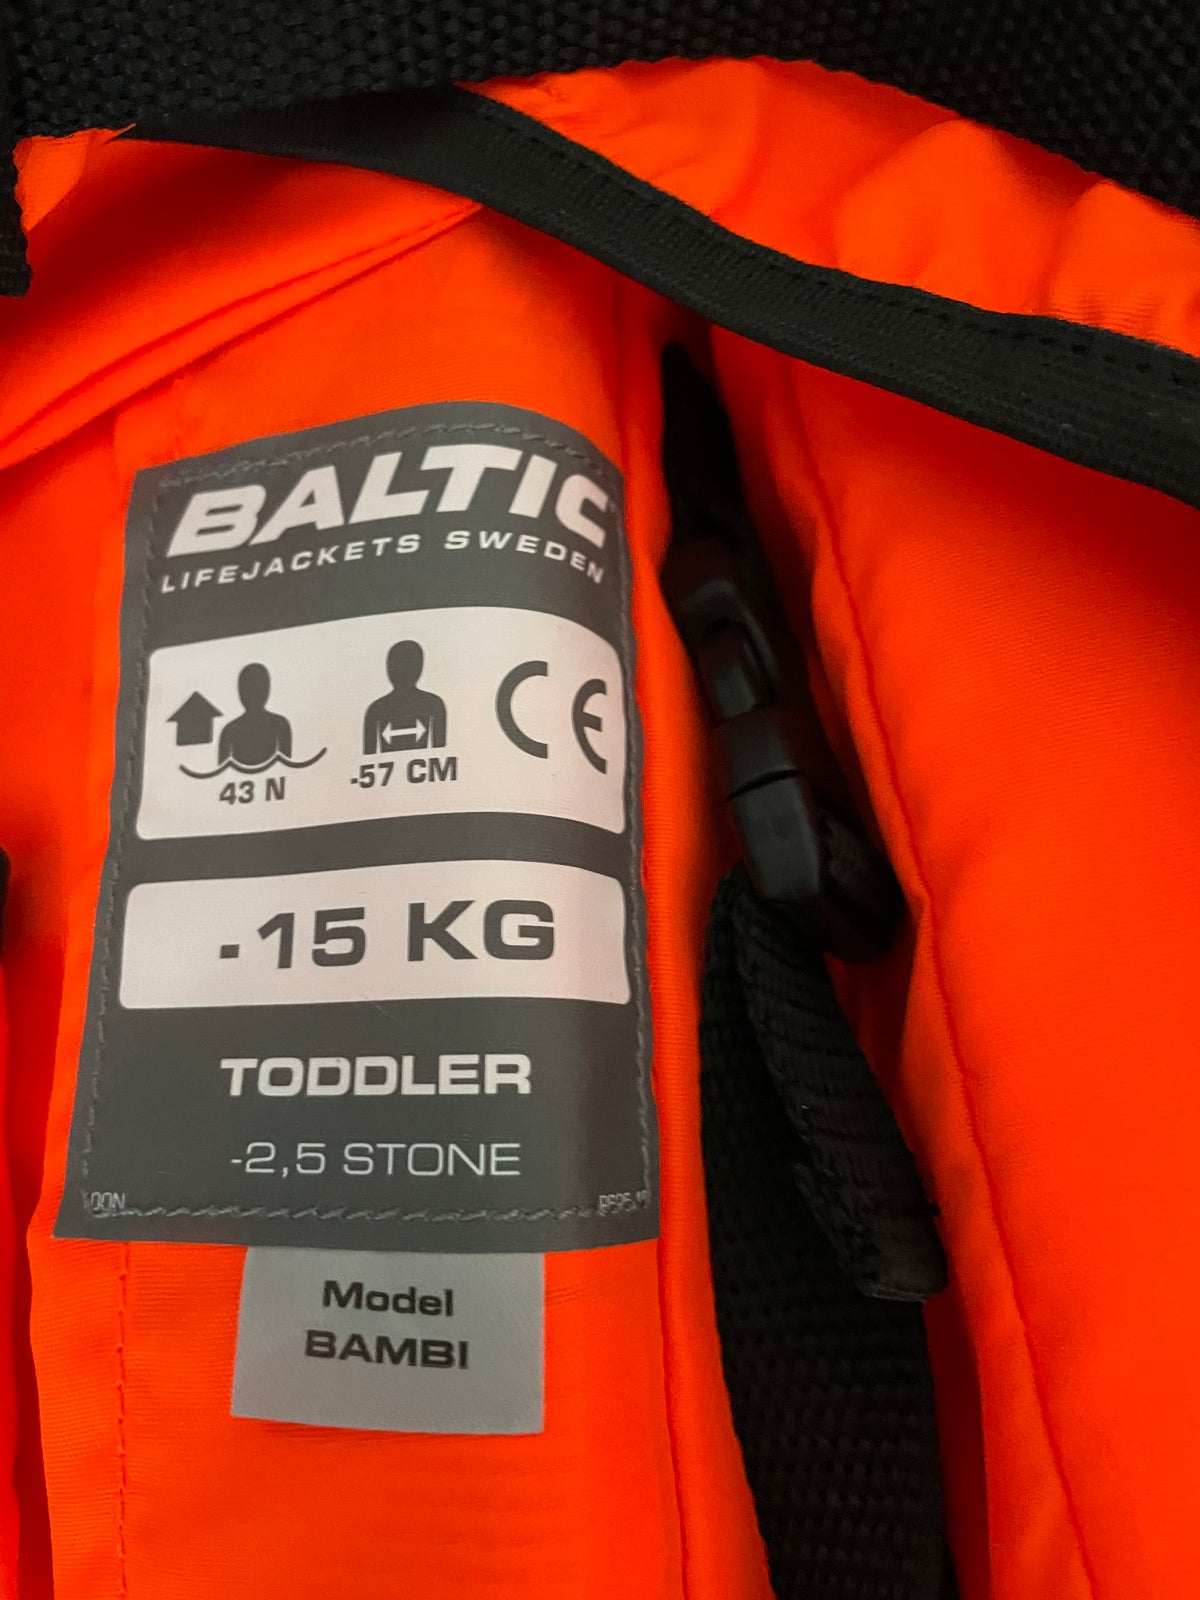 Redningsvest, Baltic - model Bambi, str. 15 kg